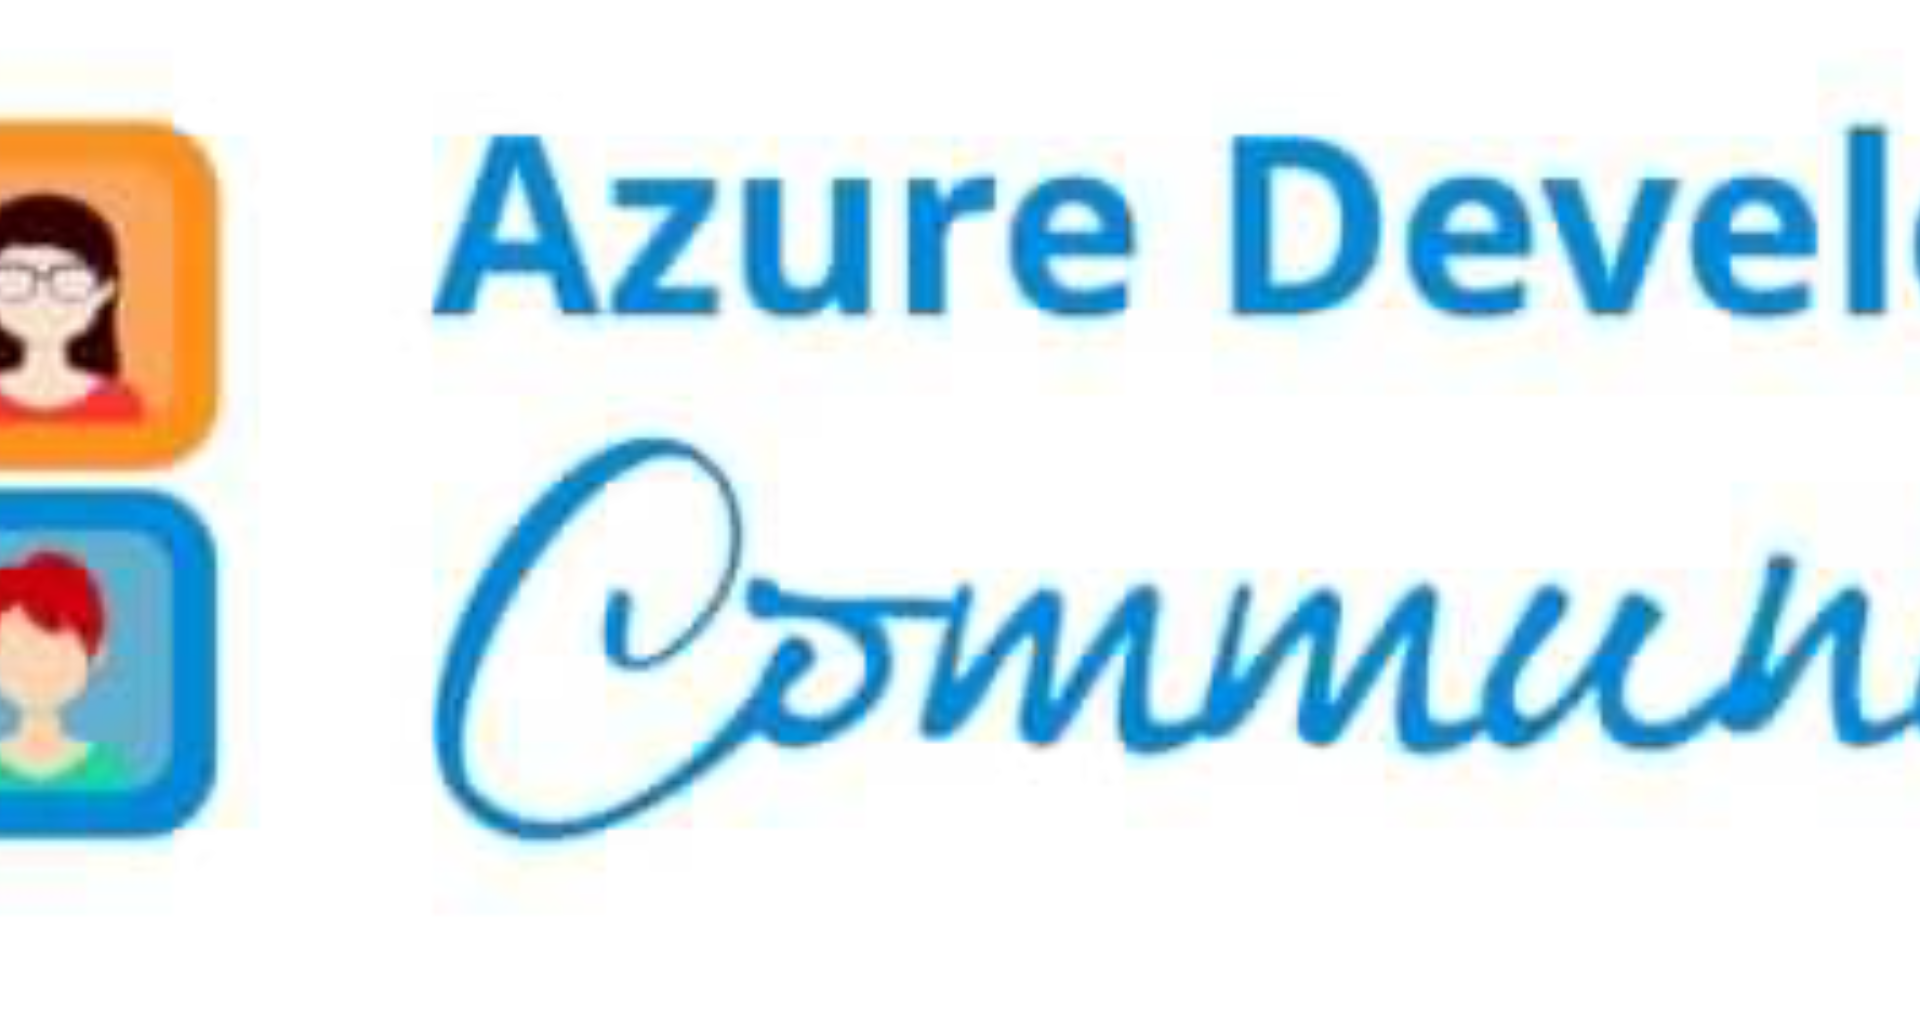 AZURE DEVELOPER COMMUNITY